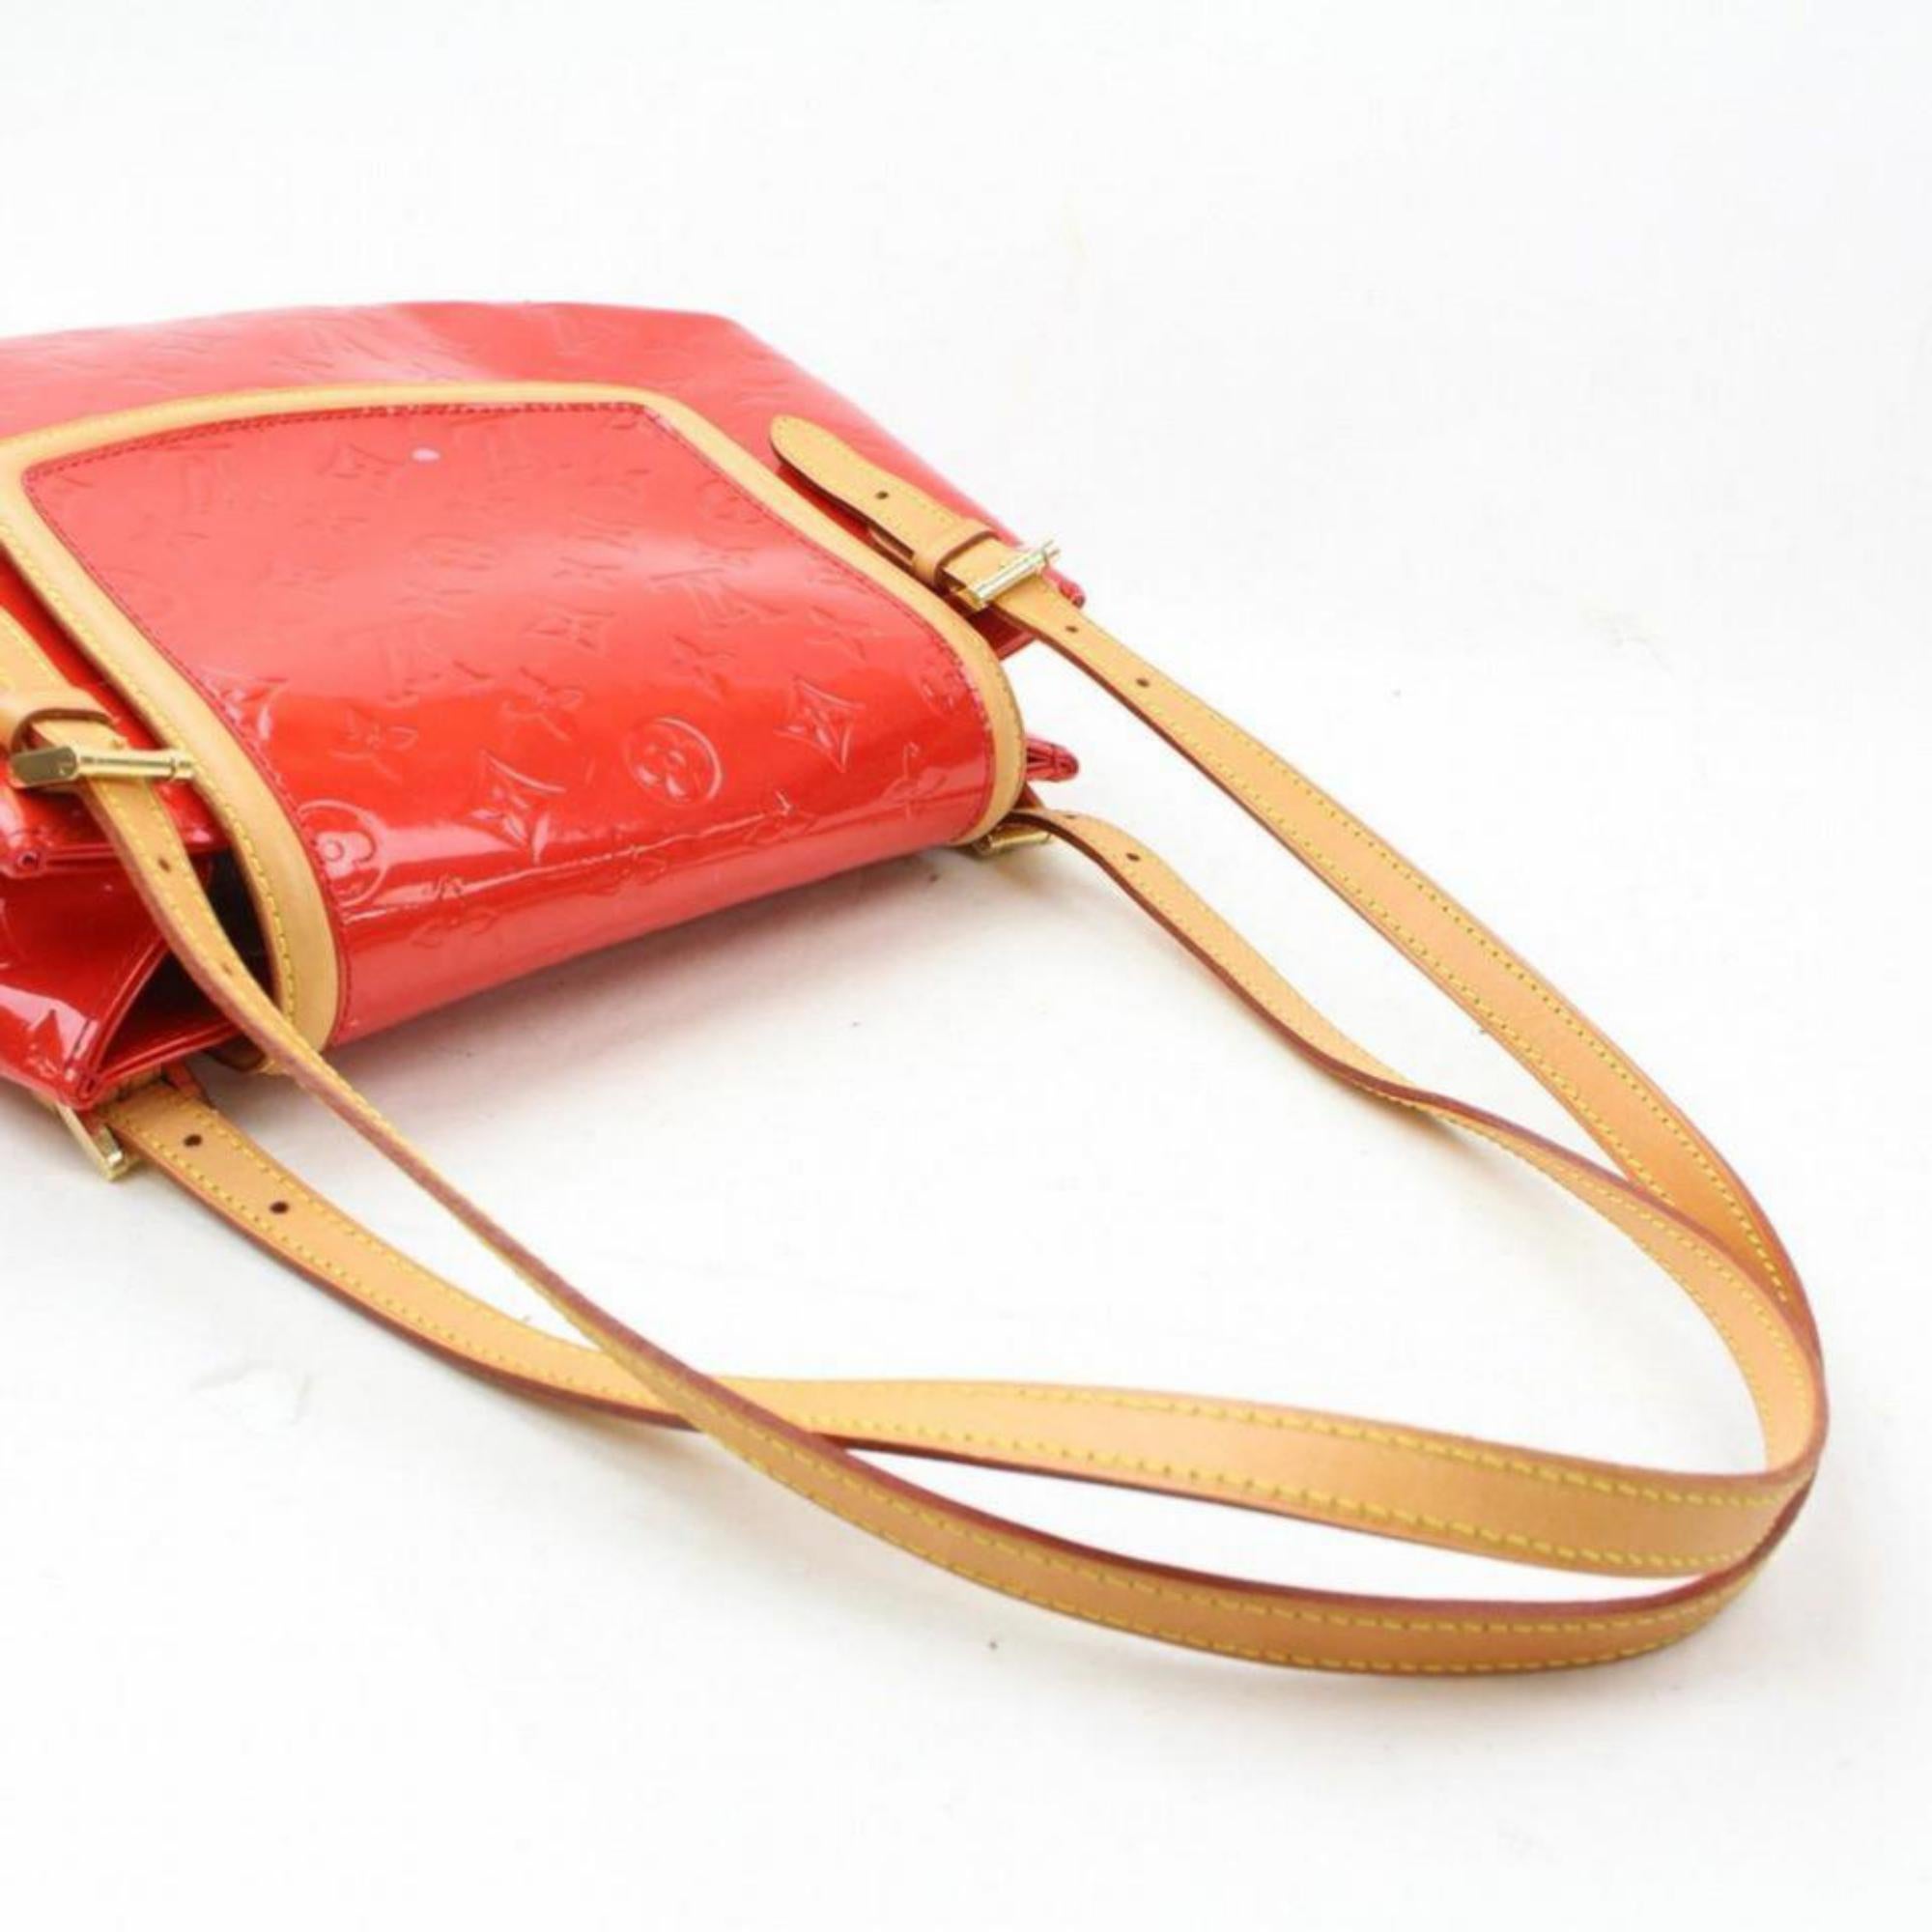 Louis Vuitton Biscayne Bay Gm 869144 Red Monogram Vernis Leather Shoulder Bag For Sale 1